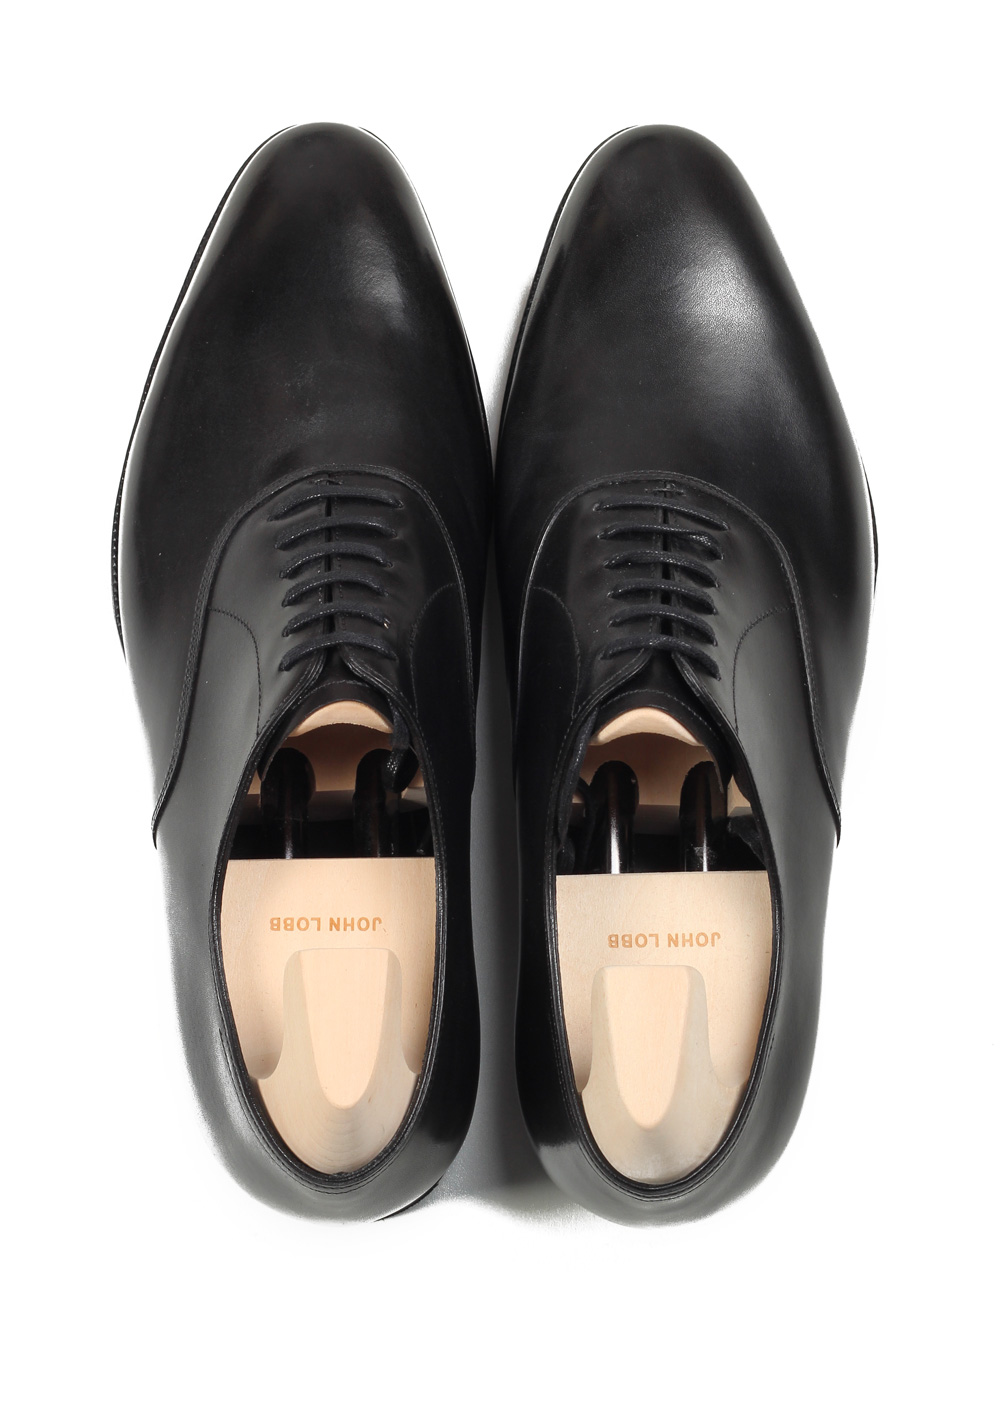 John Lobb Seaton Black Oxford Shoes Size 10 UK / 11 U.S. On 7000 Last | Costume Limité